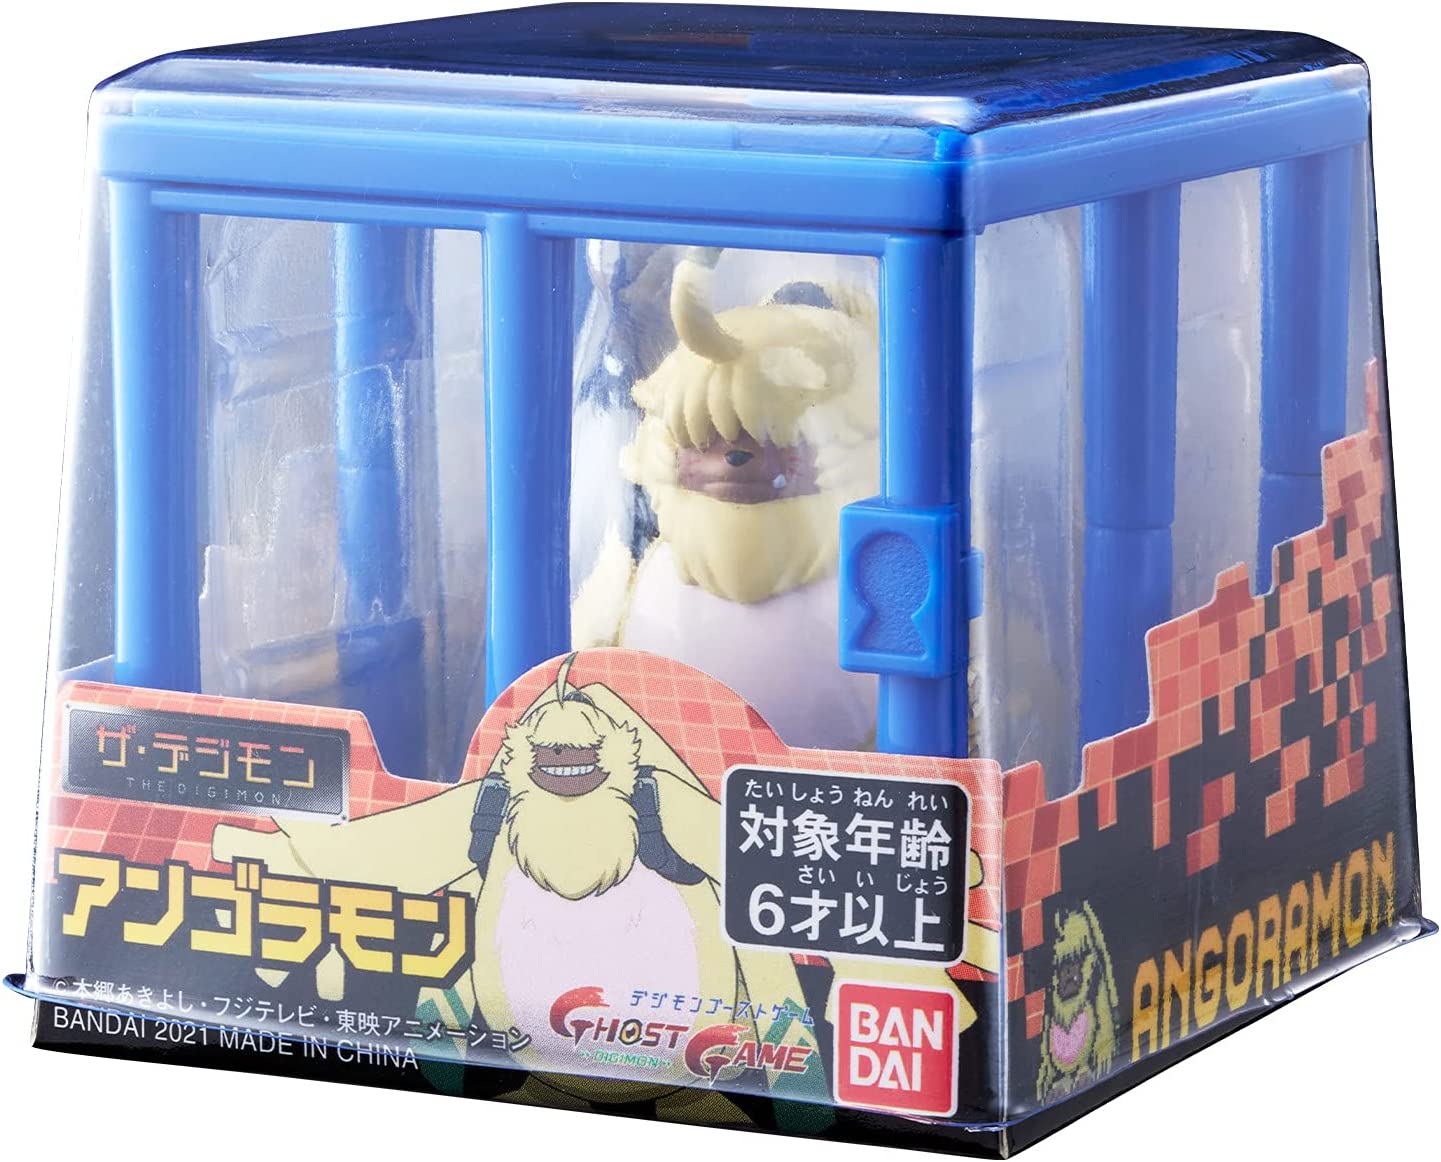 Digital Monsters The Digimon Angoramon | animota